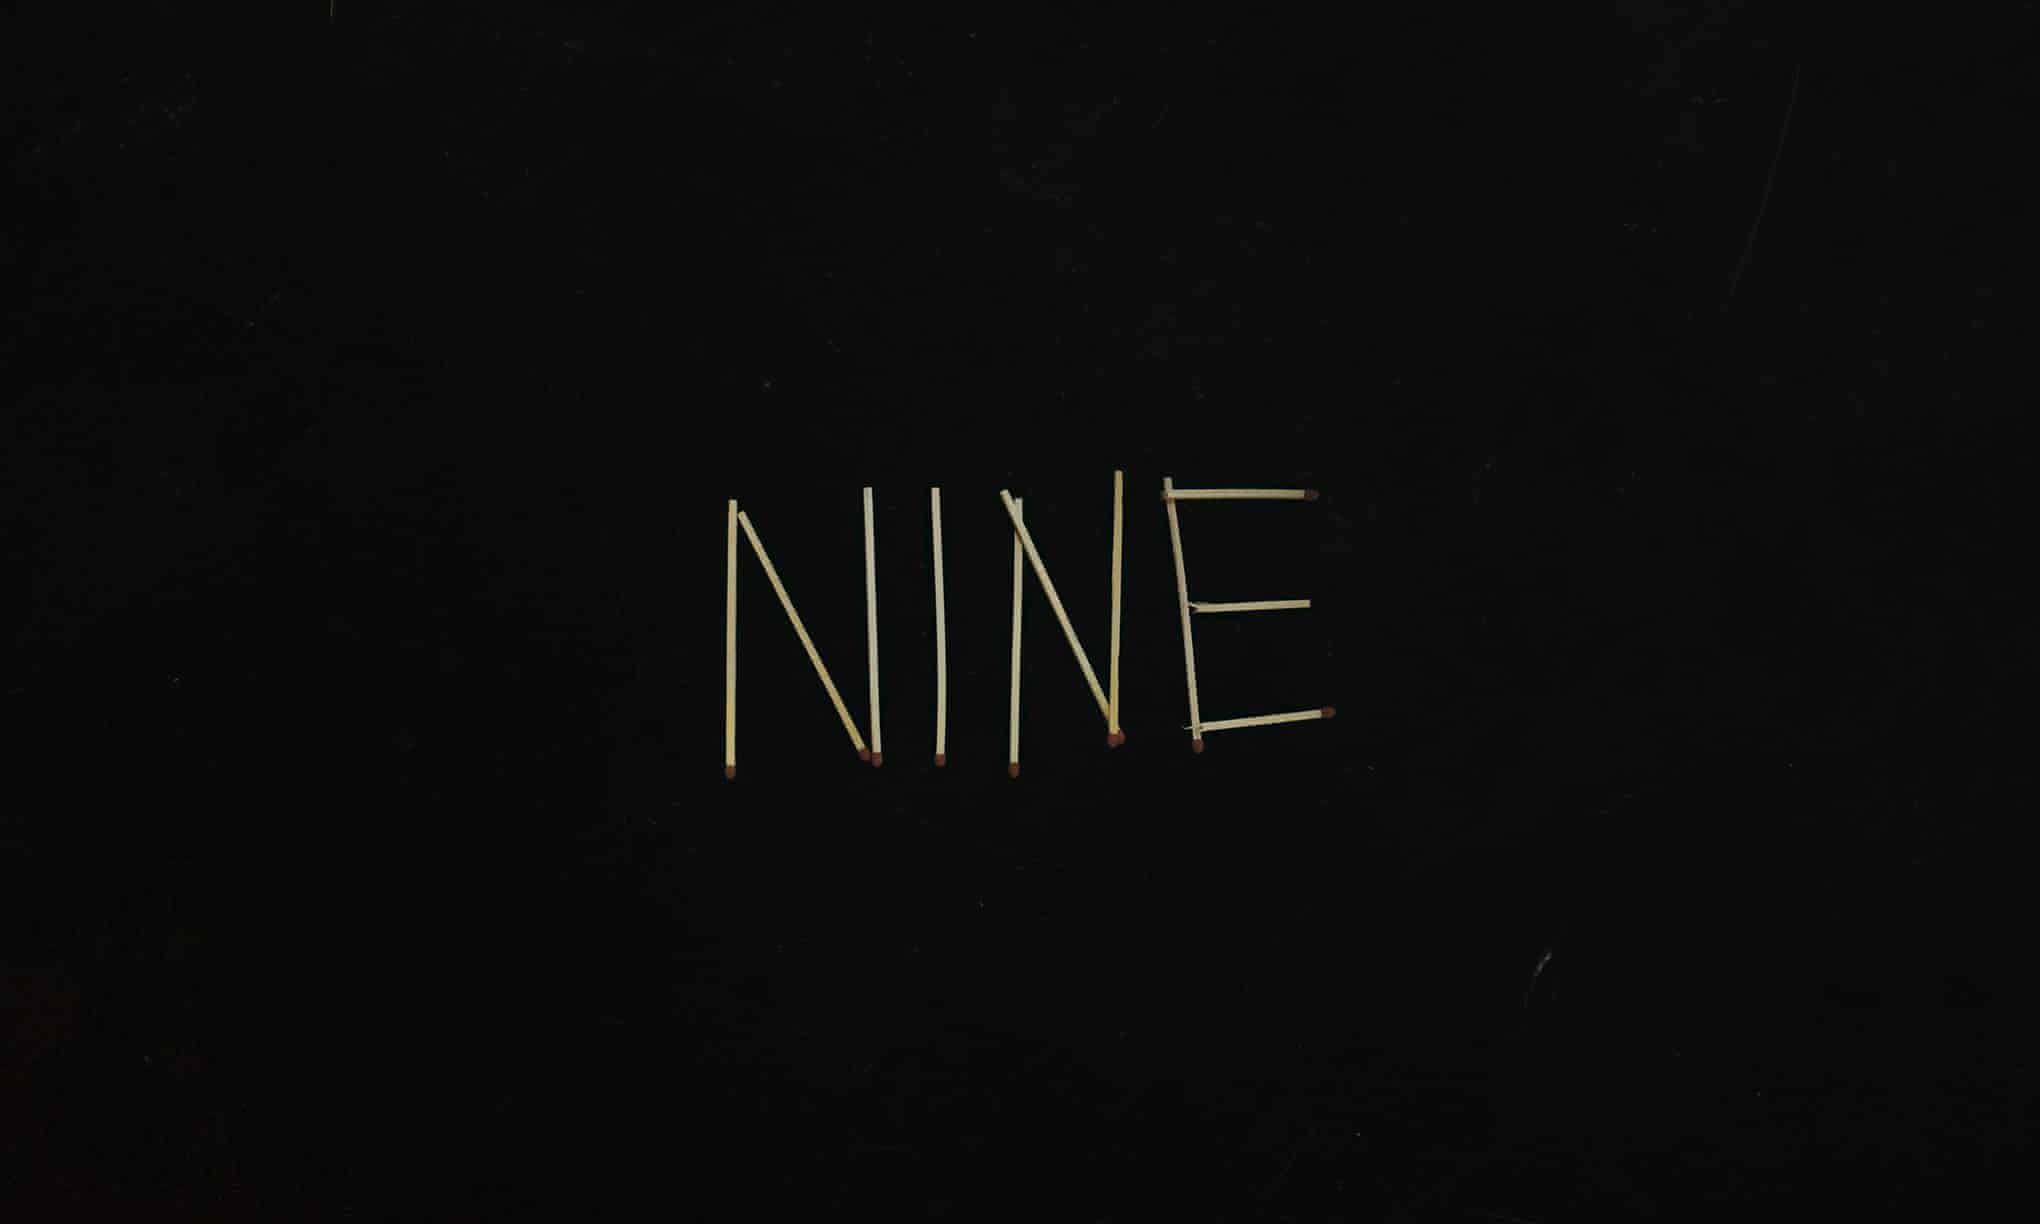 L'album “Nine” de Sault, sorti en juin 2021 sur le label Forever Living Originals et supprimé des plateformes quatre-vingt-dix-neuf jours après.